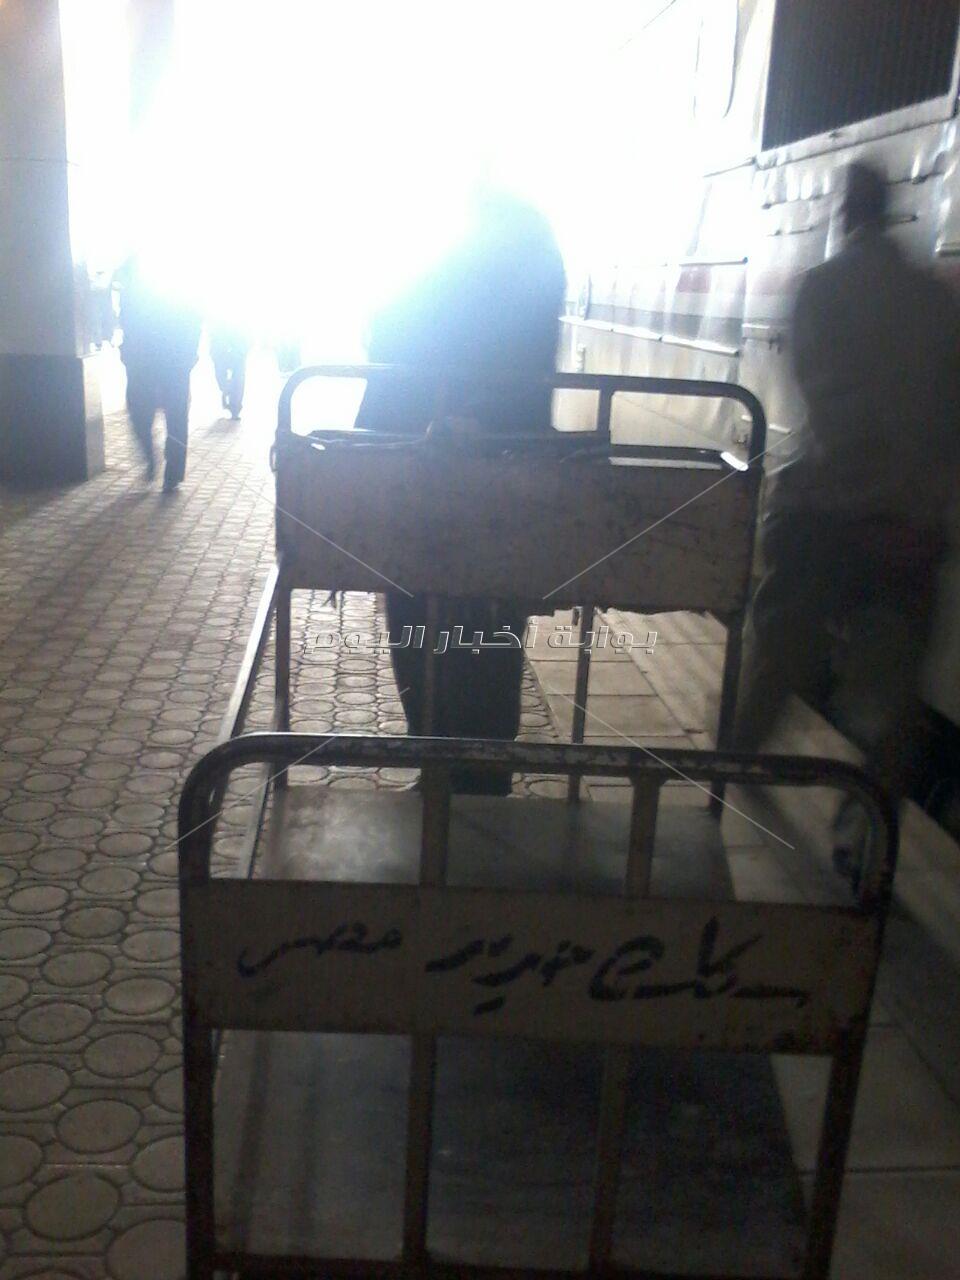 شيالو محطة مصر